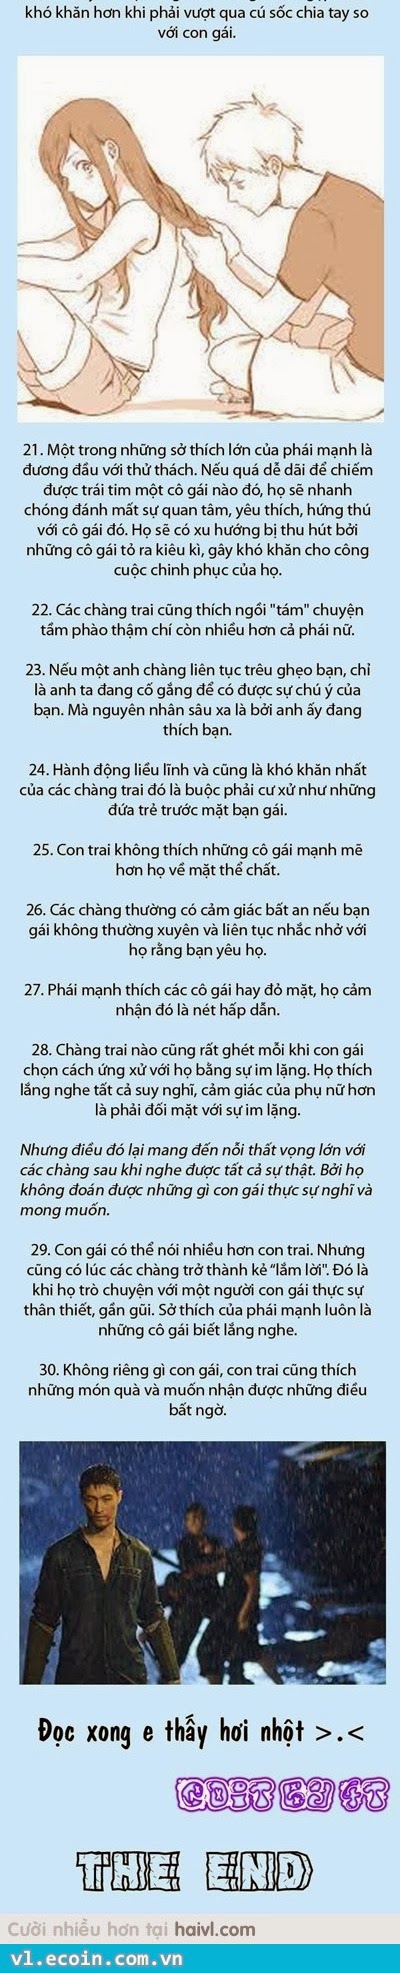 CHuan ko may thim